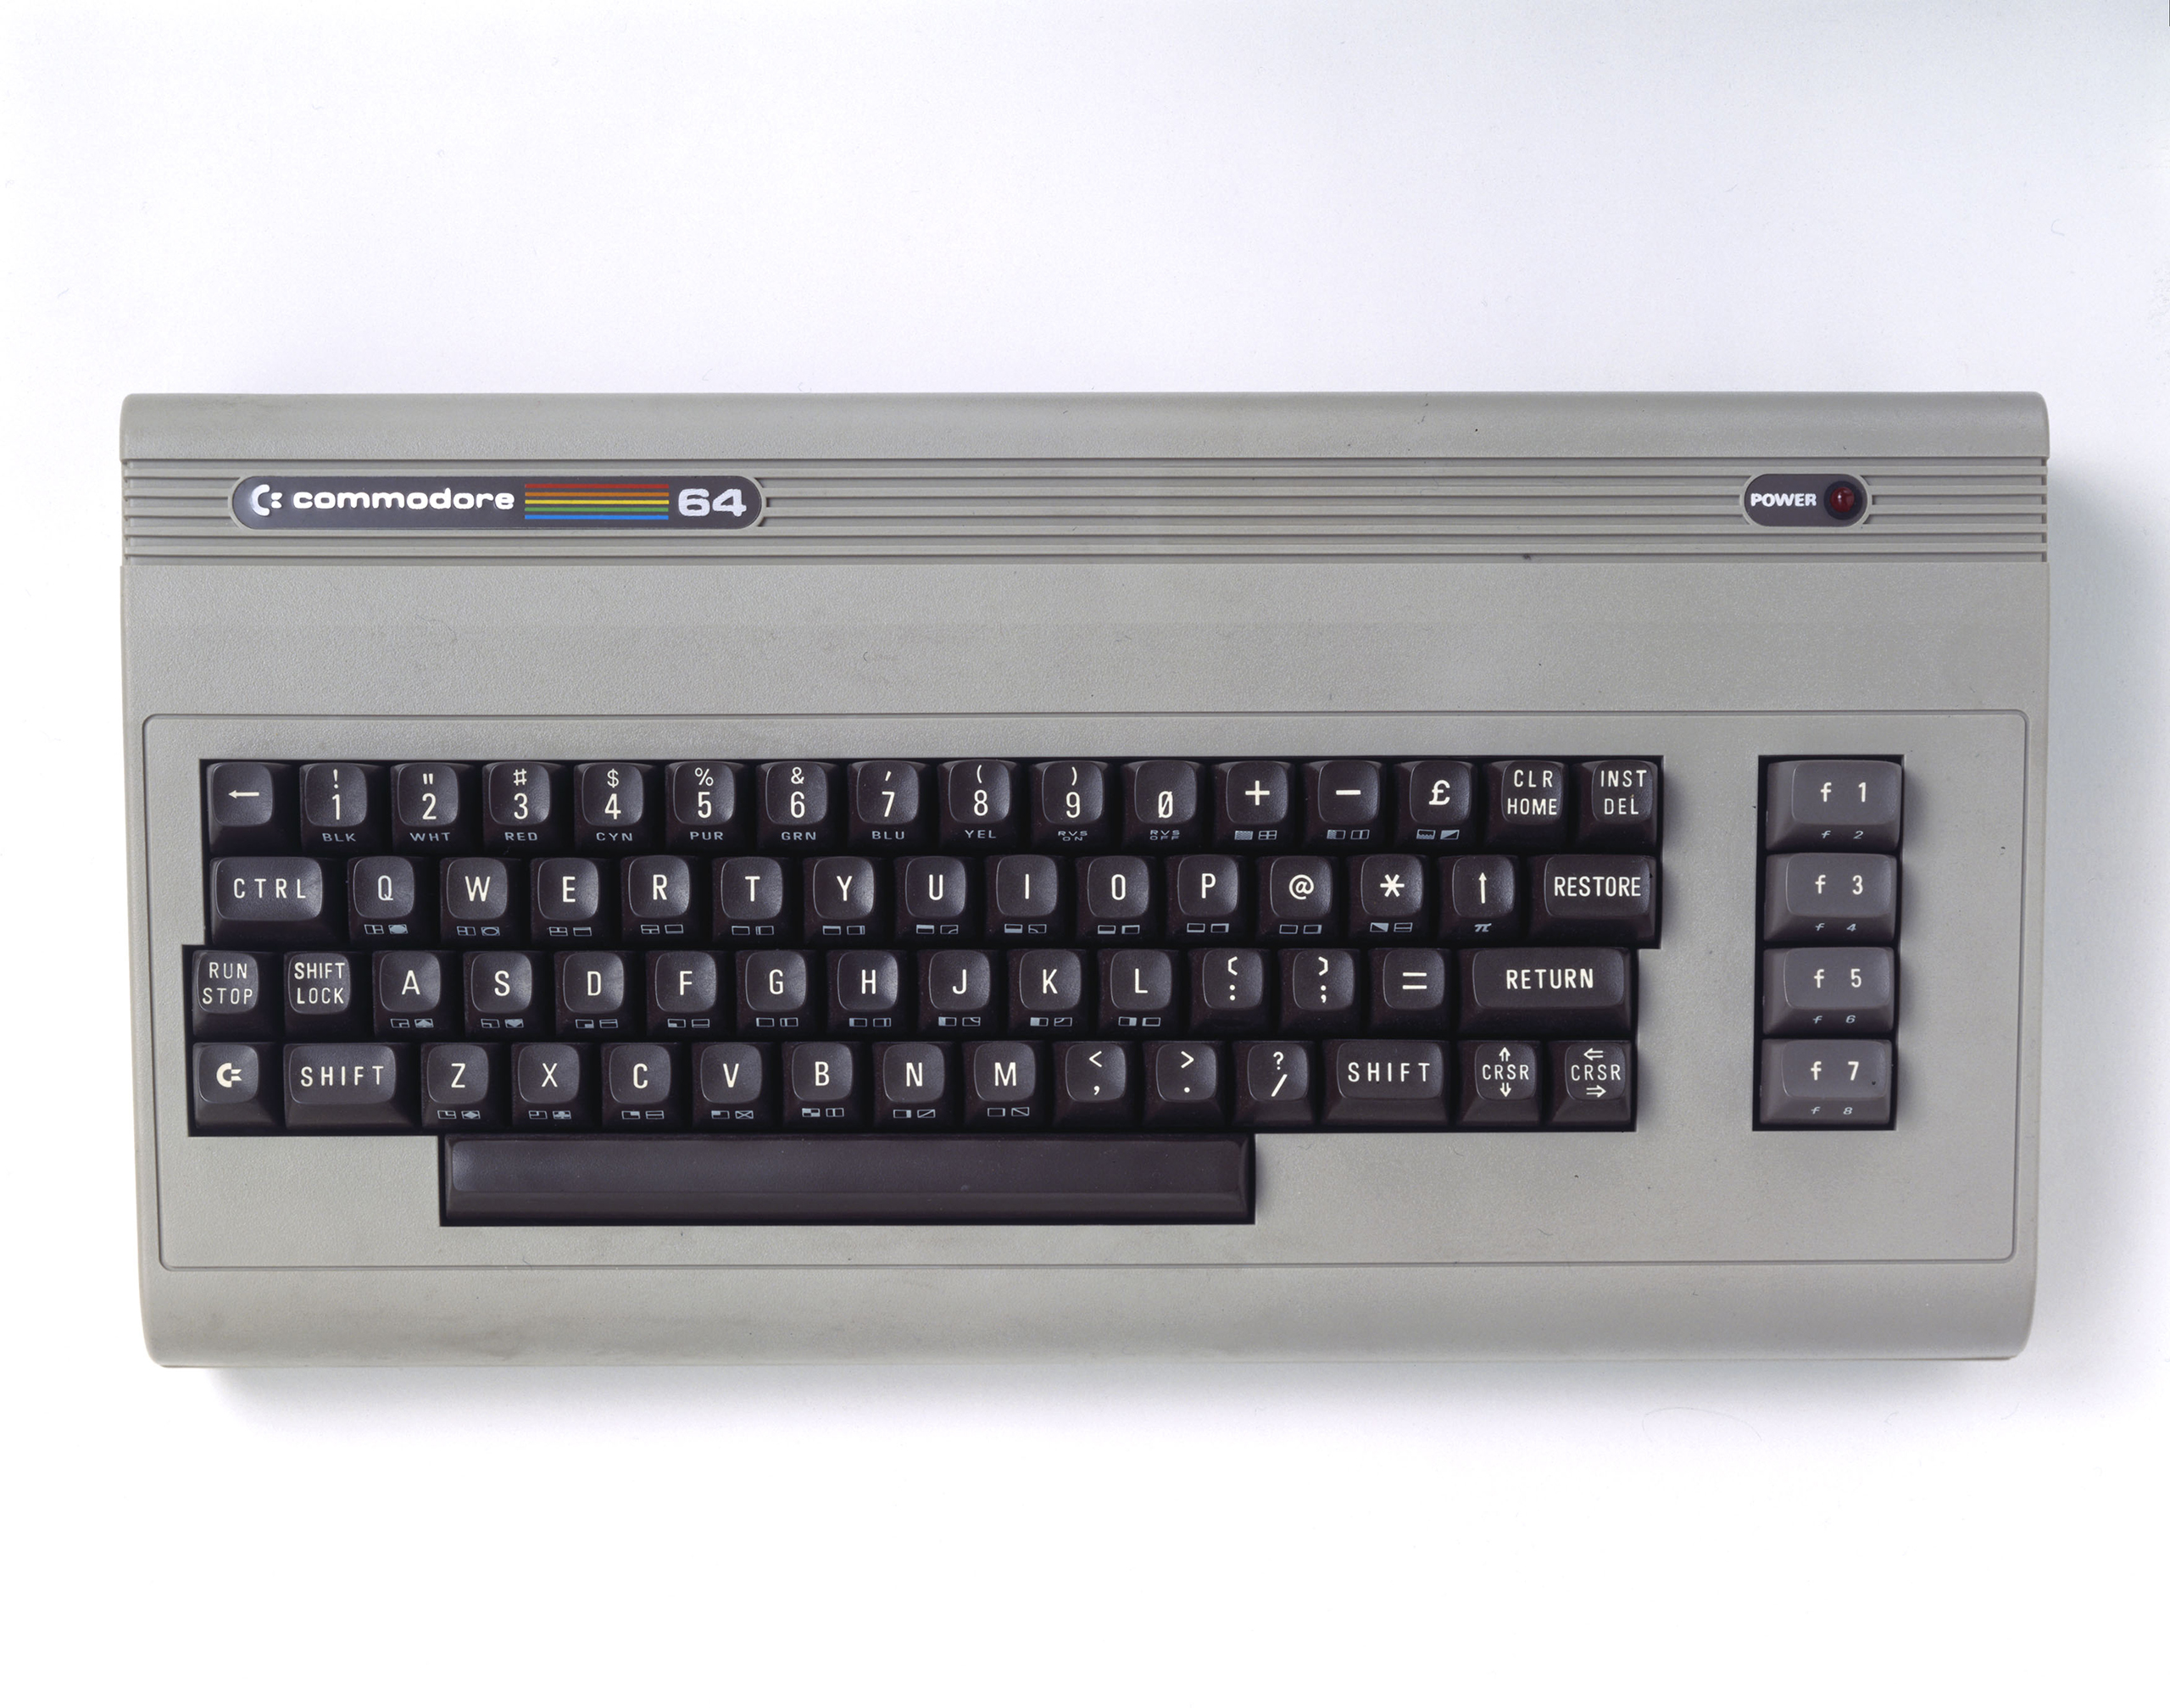 Commodore 64 microcomputer, c 1985.